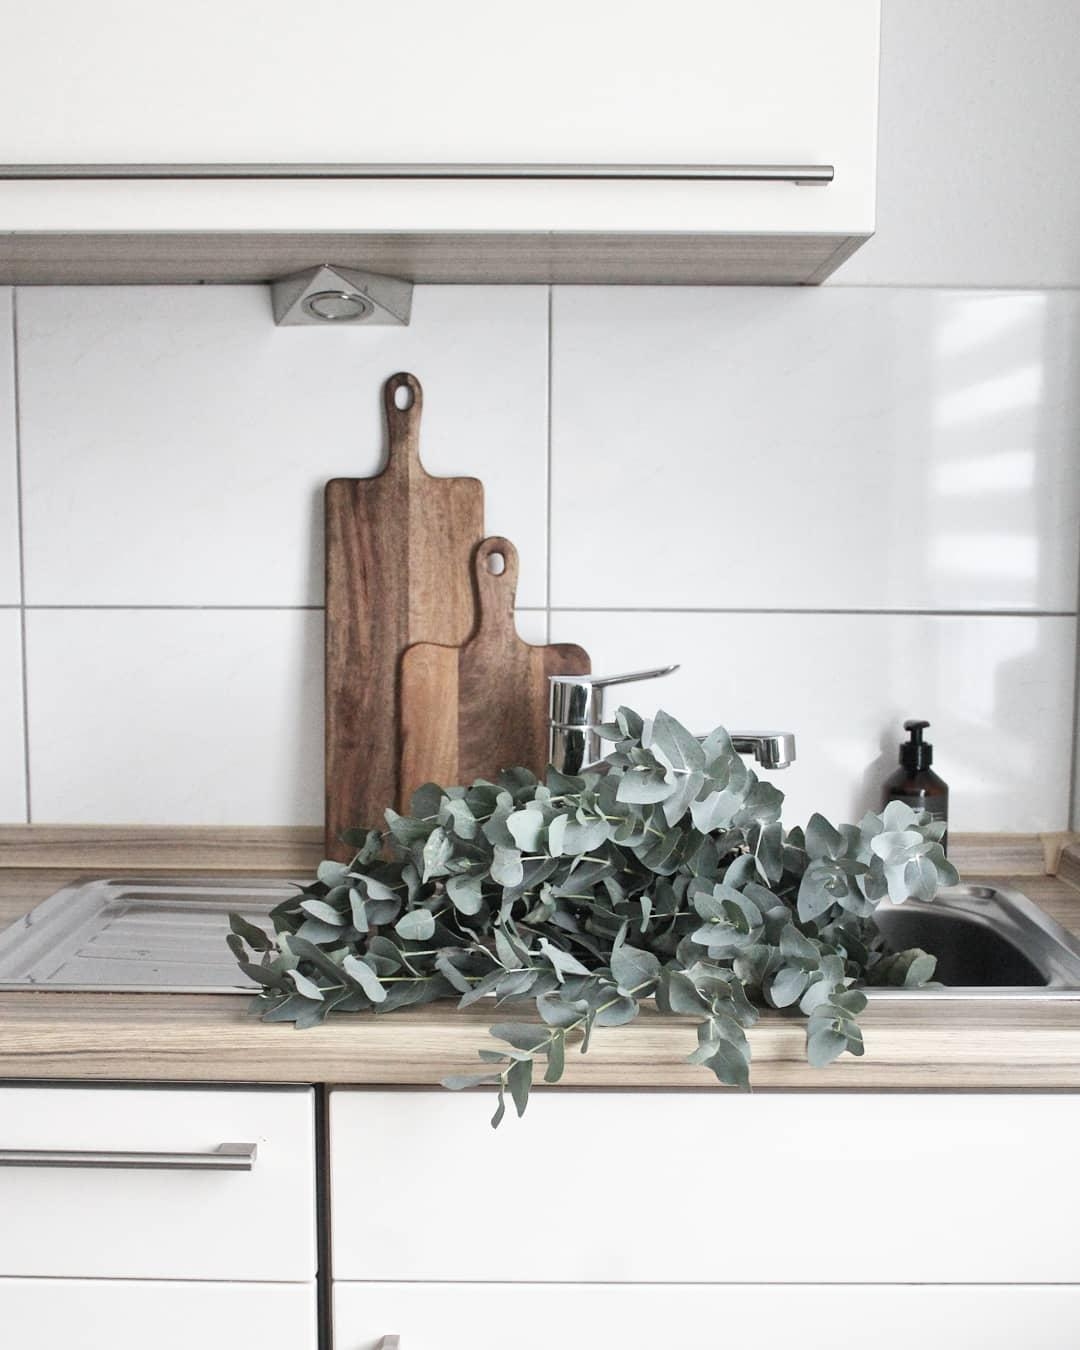 Verliebt in Eukalyptus, wer noch?😊
#küche #eukalyptus #kitchen